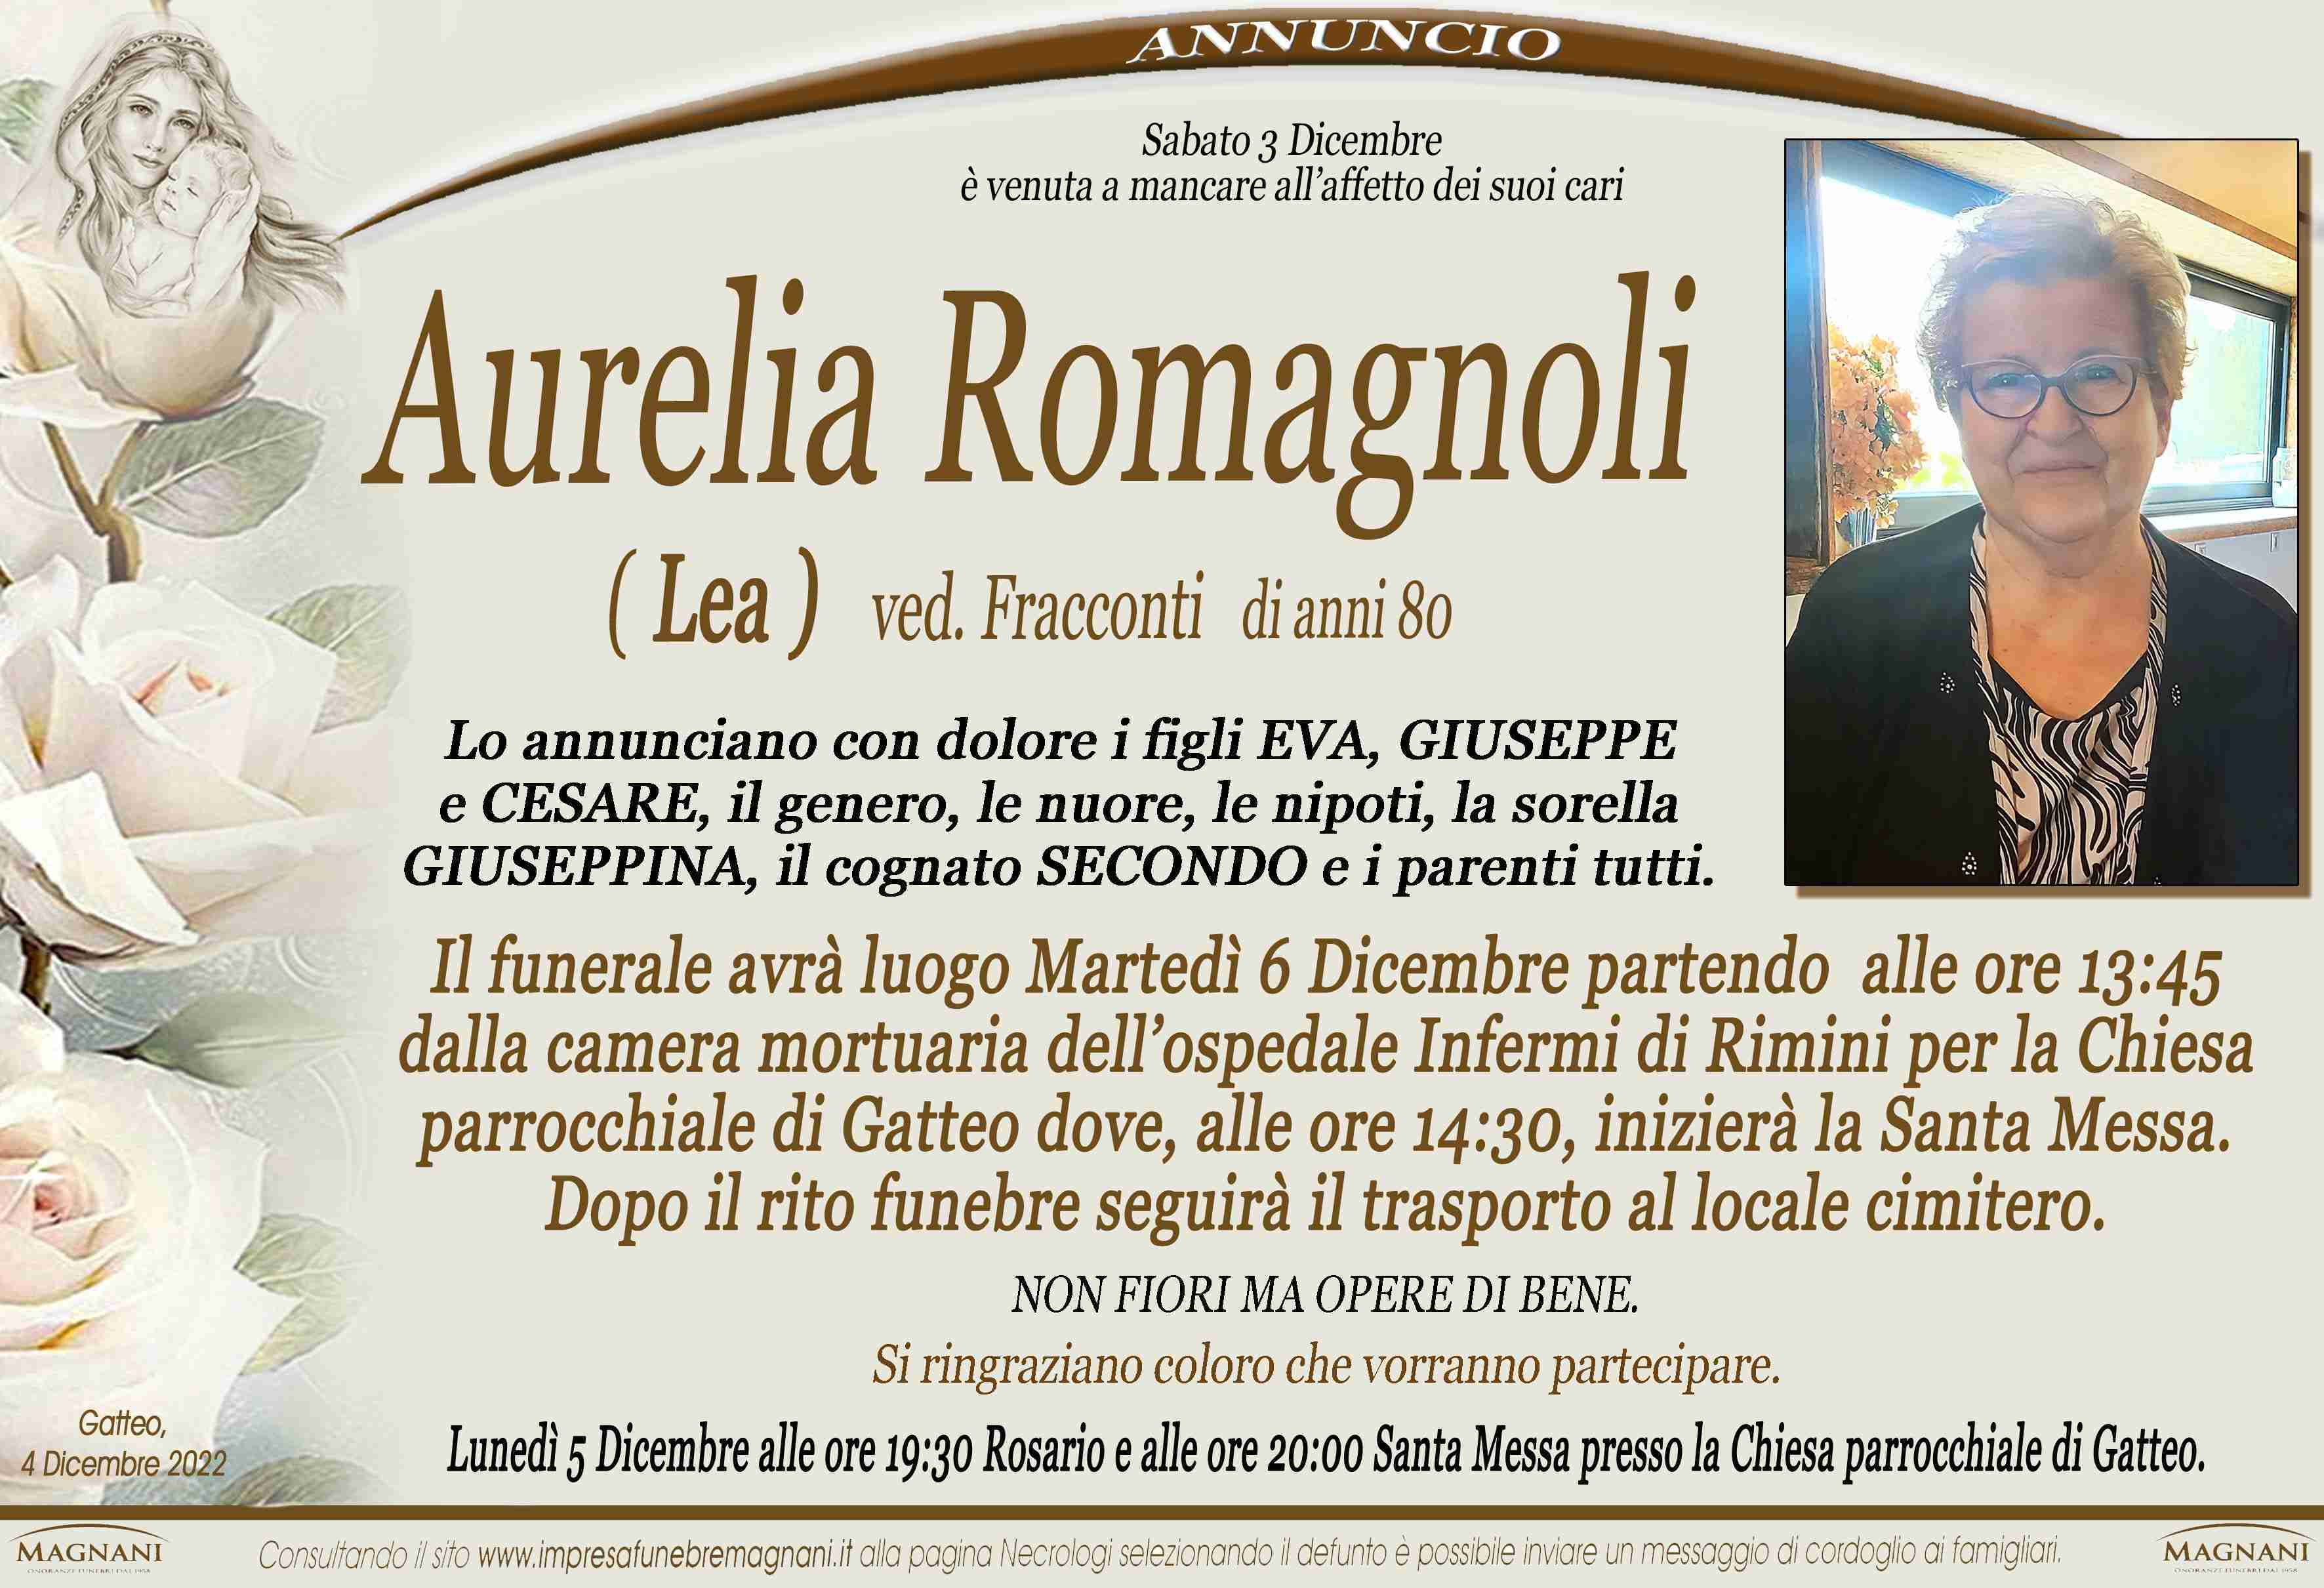 Aurelia Romagnoli